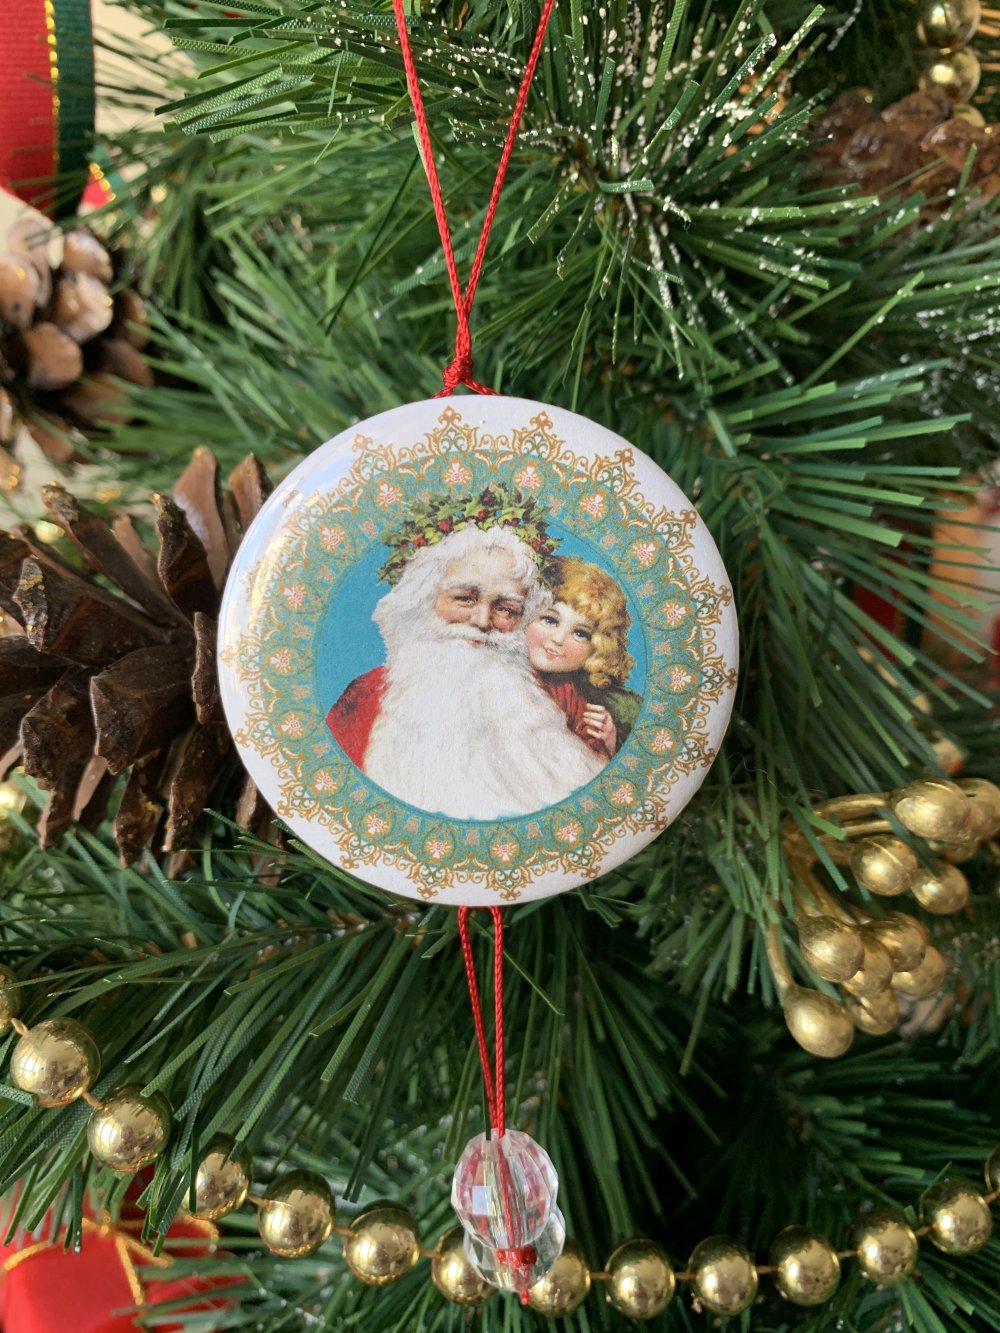 Boucles d'oreilles Père Noel sapin - Bijoux collection Noël